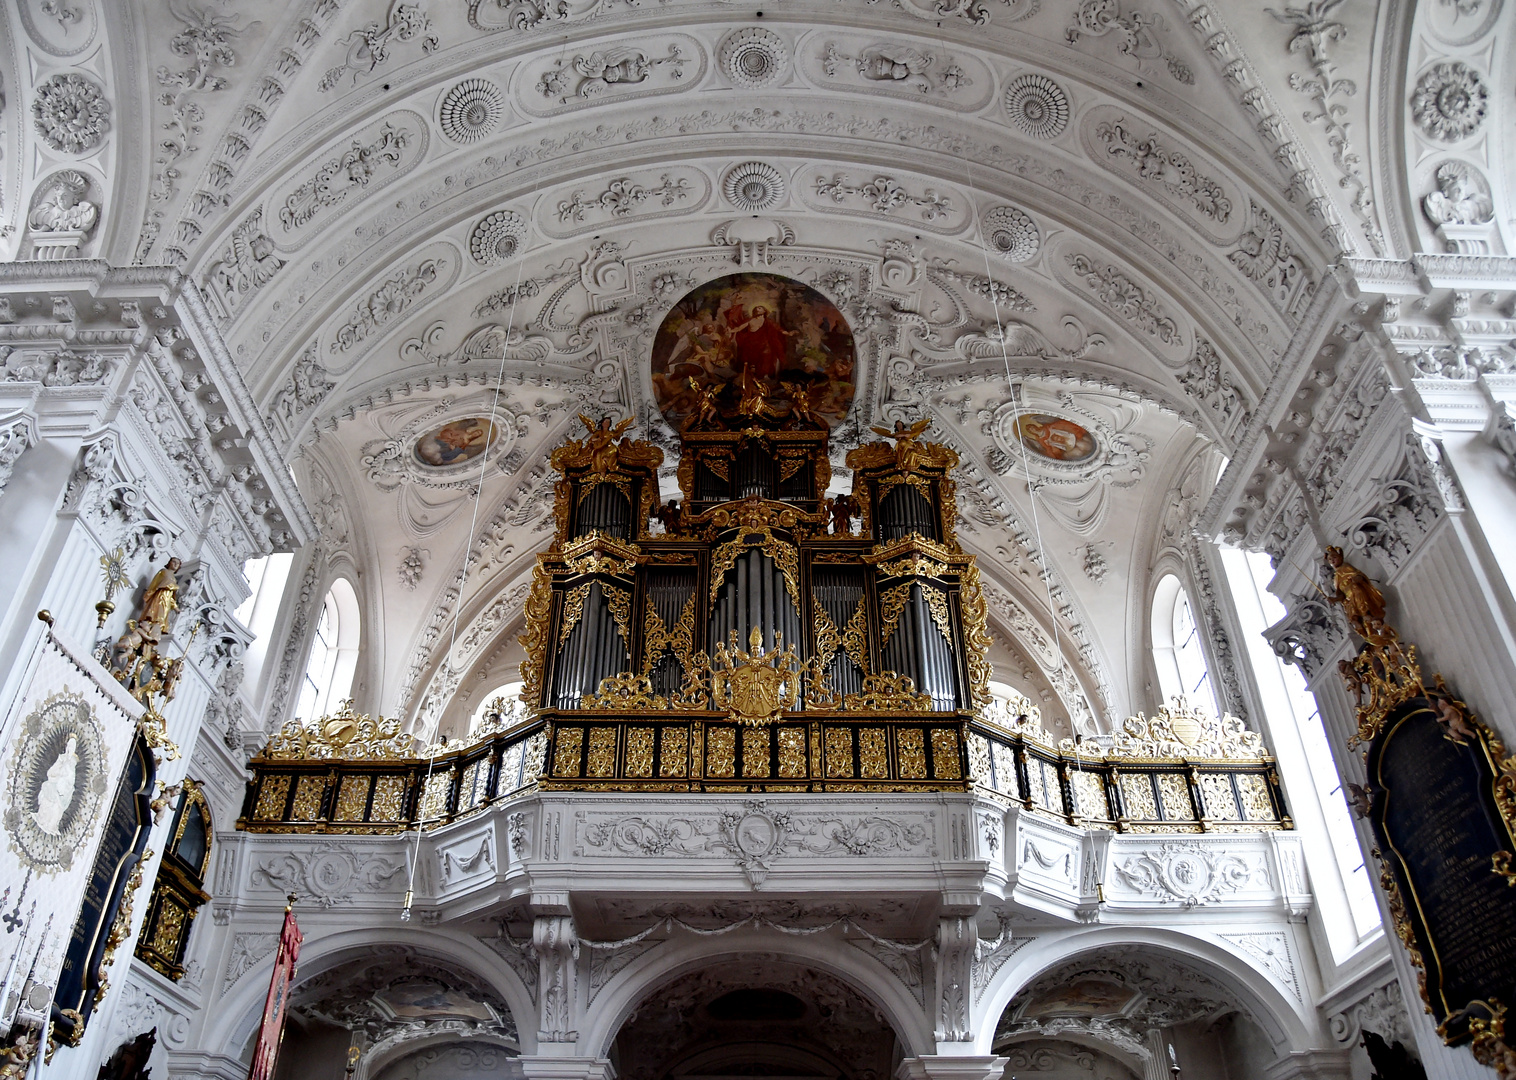 Stiftskirche Kloster Wettenhausen Blick auf die Orgel